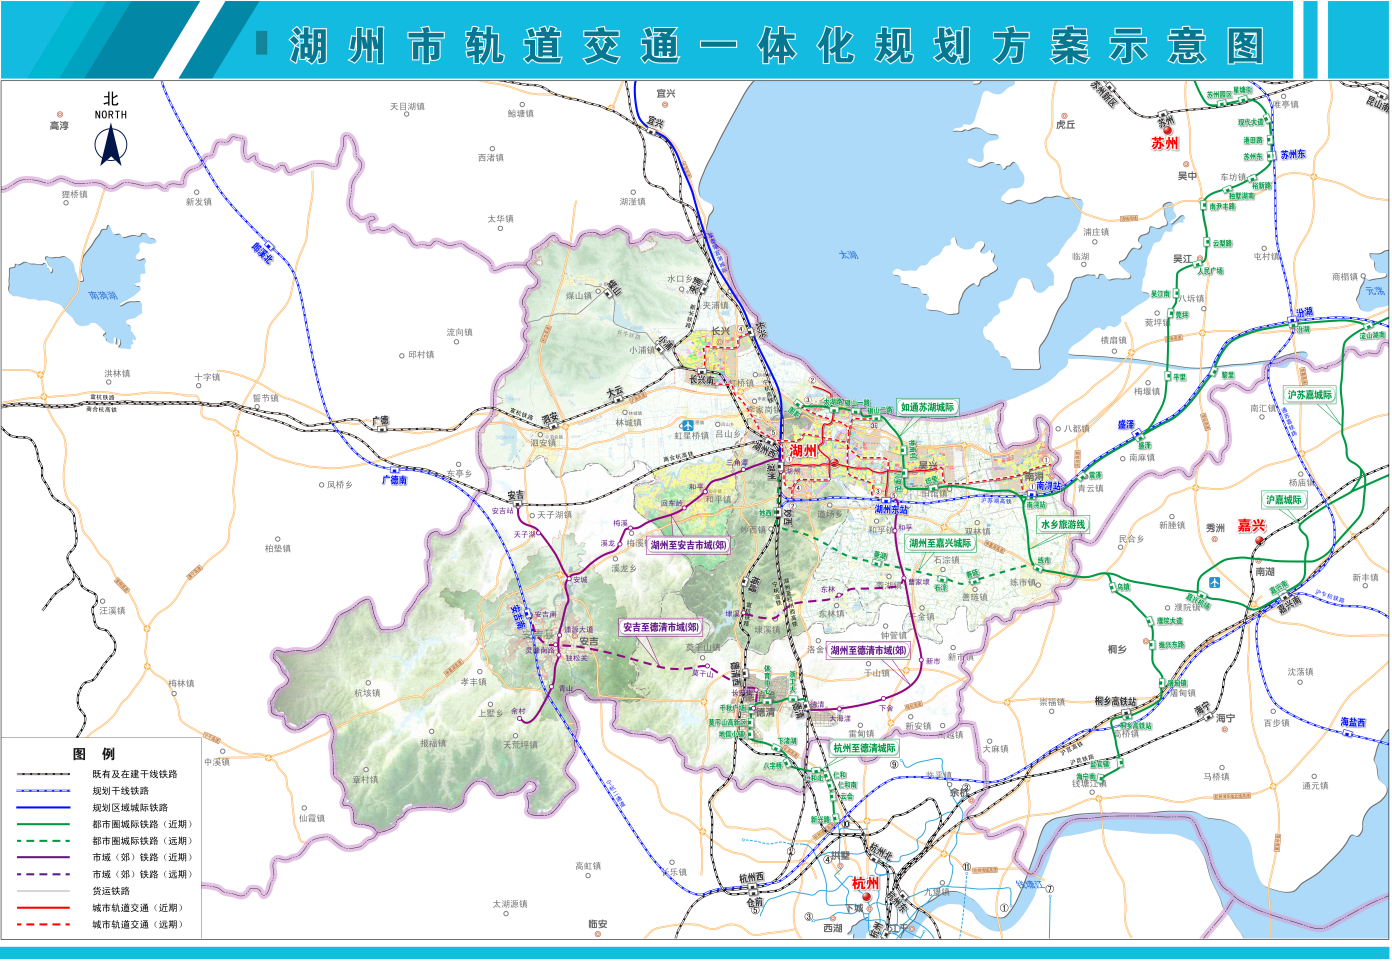 (湖州市轨道交通一体化方案)据此前公开信息,沪苏湖铁路于2020年6月5